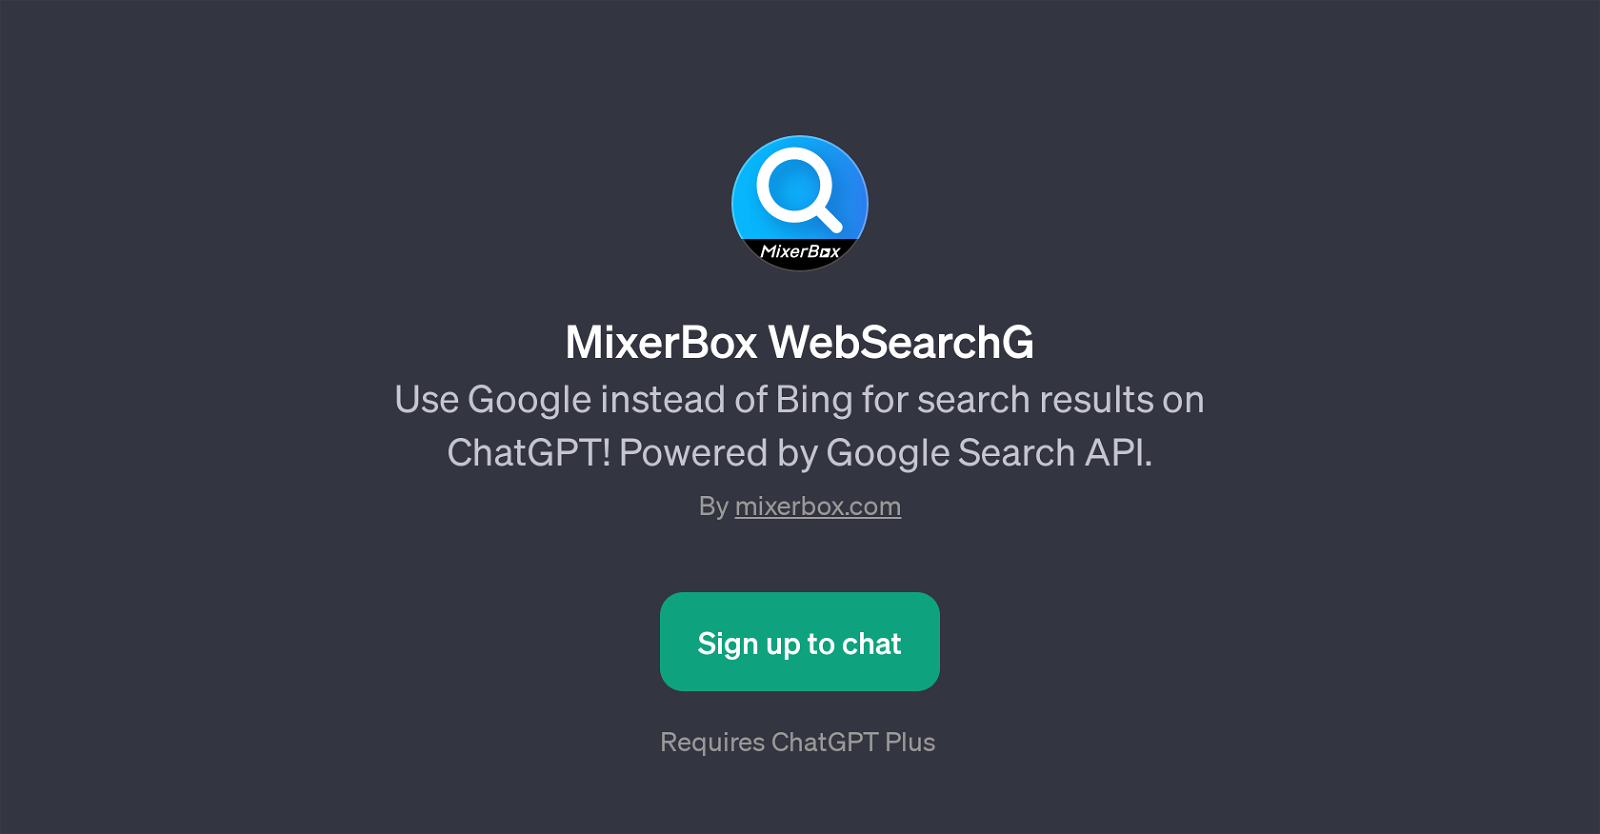 MixerBox WebSearchG website